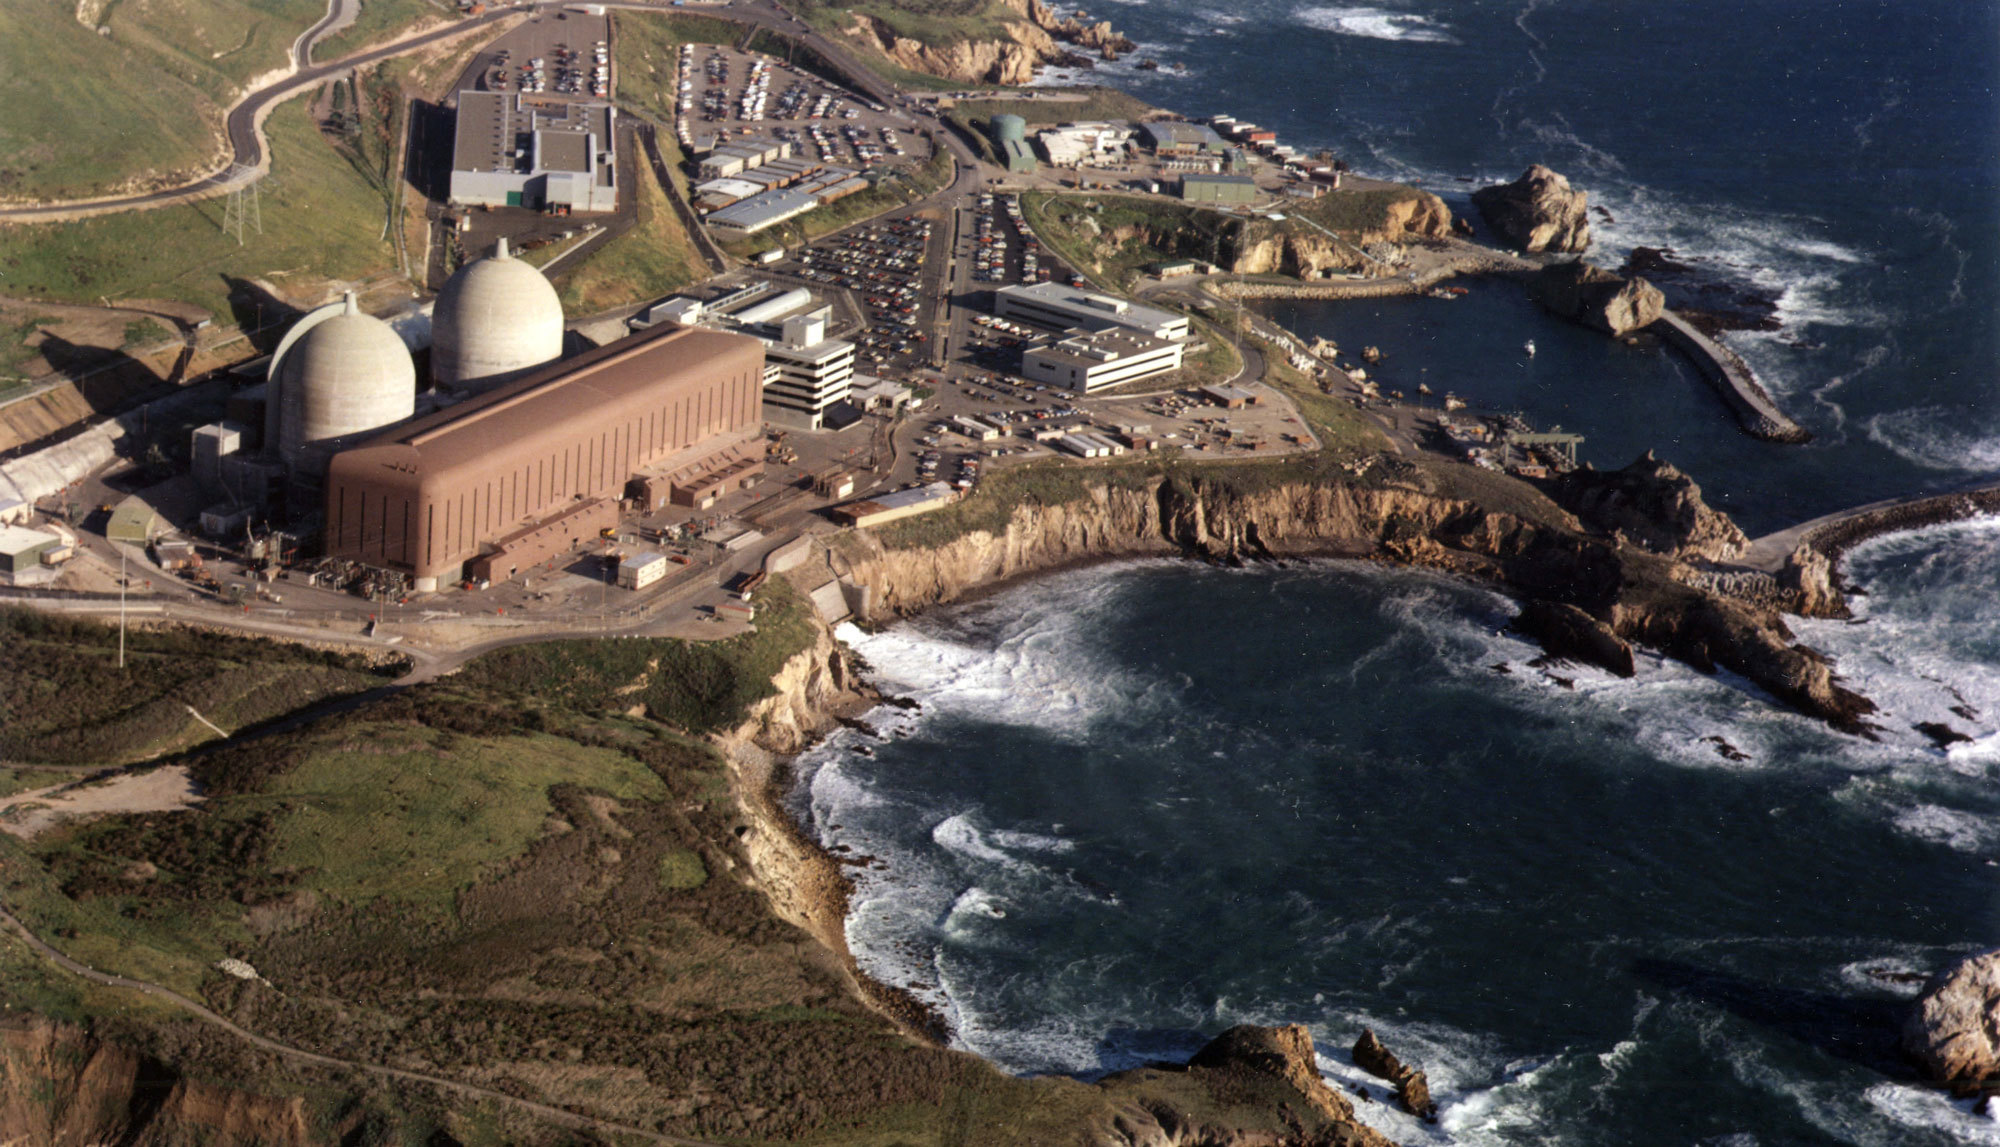 Атомная электростанция Diablo Canyon, расположенная недалеко от пляжа Авила в Калифорнии, будет выведена из эксплуатации в 2024 году.